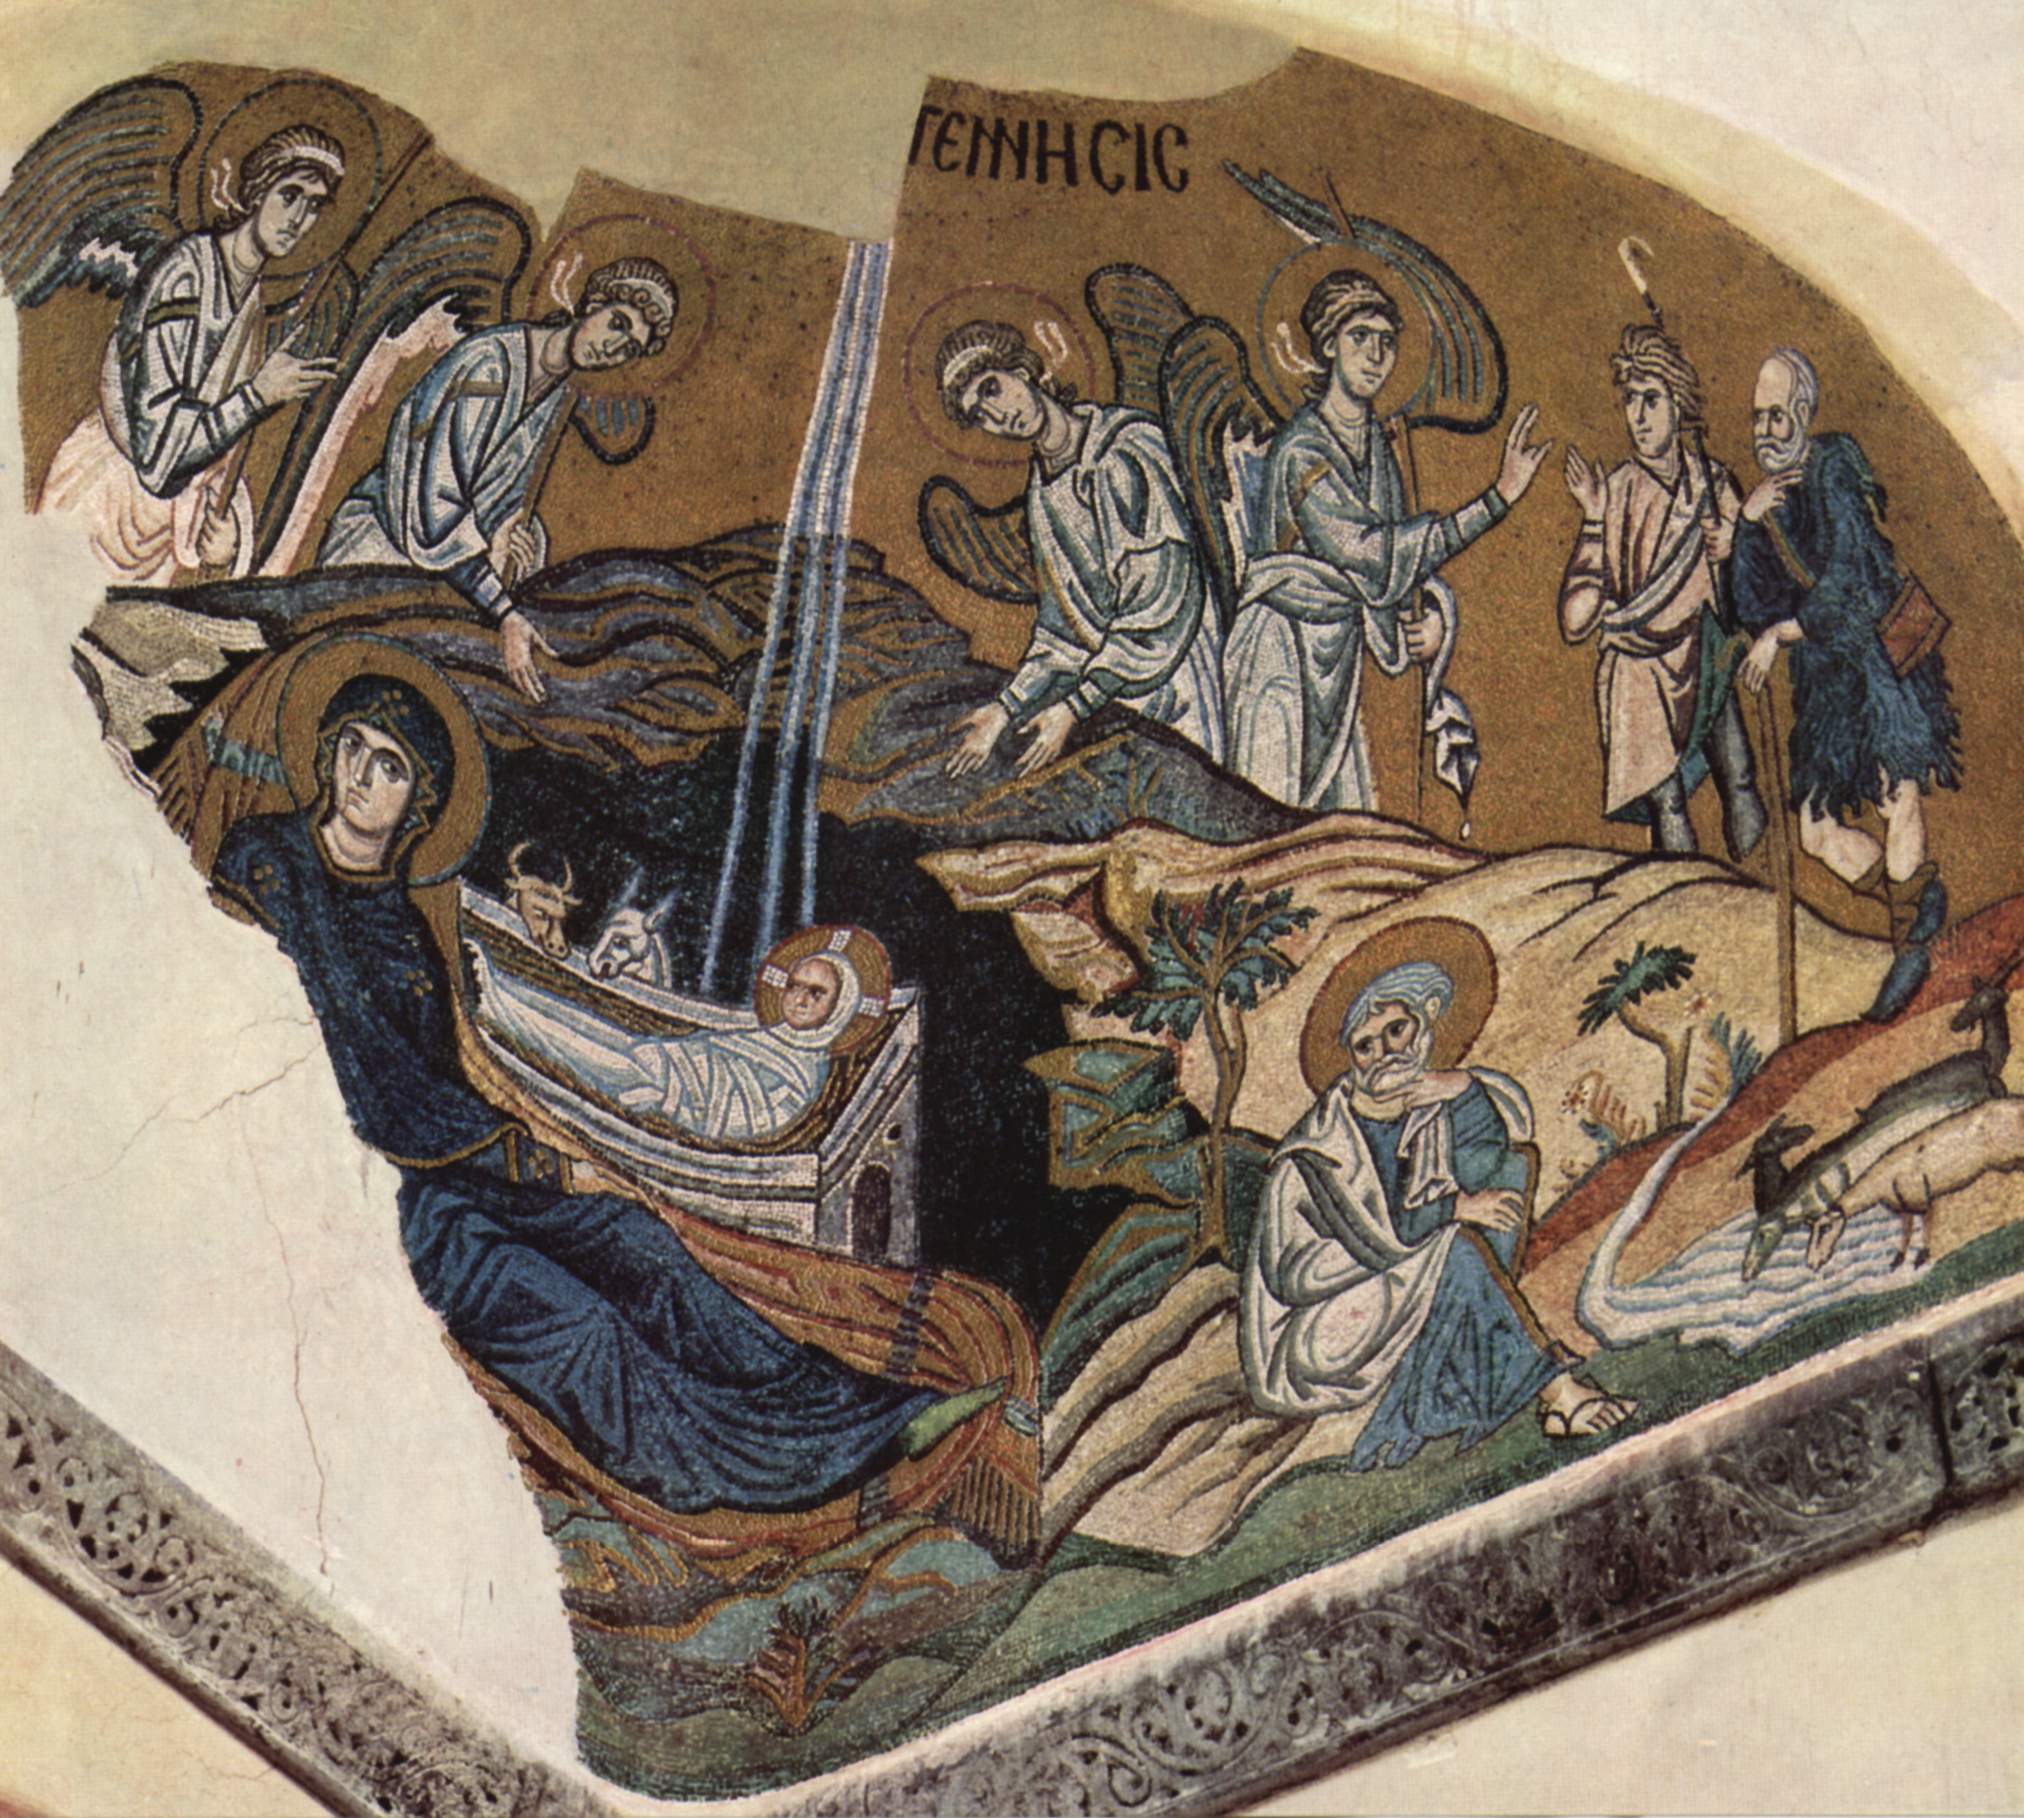 Мозаика церкви Успения в Дафни. Ок. 1100 г. Греция